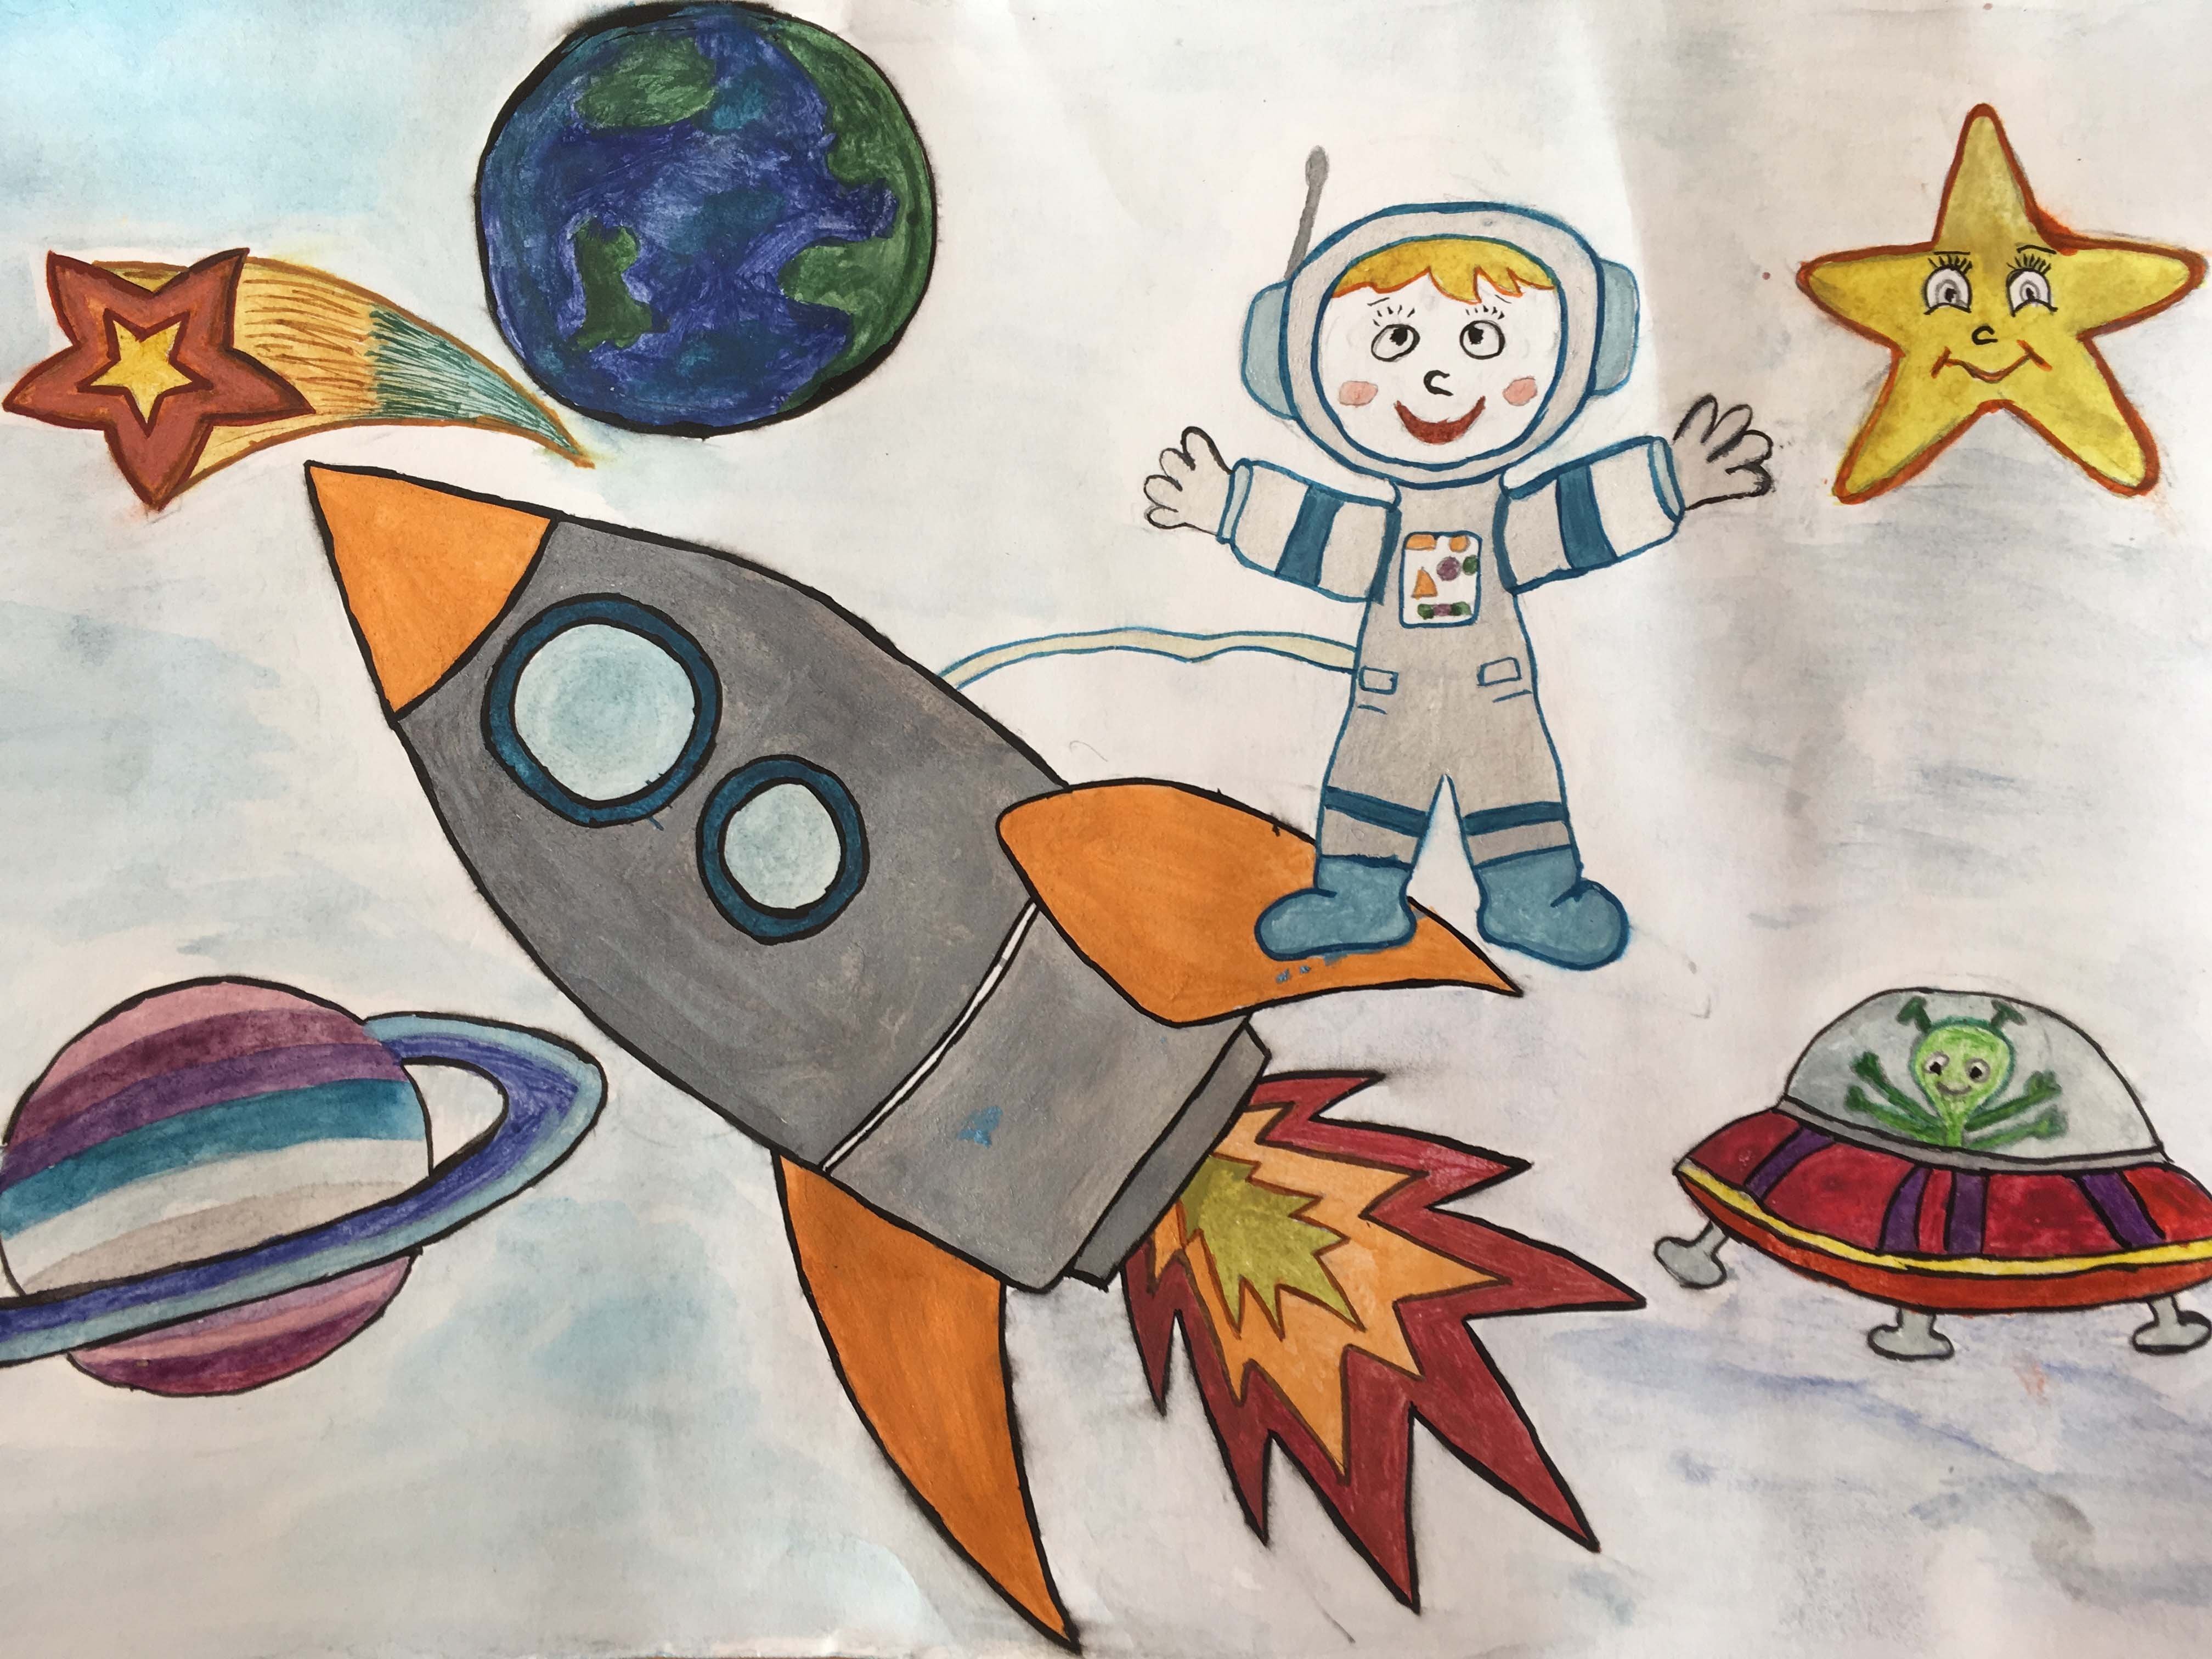 Рисунок на день космонавтики для детей